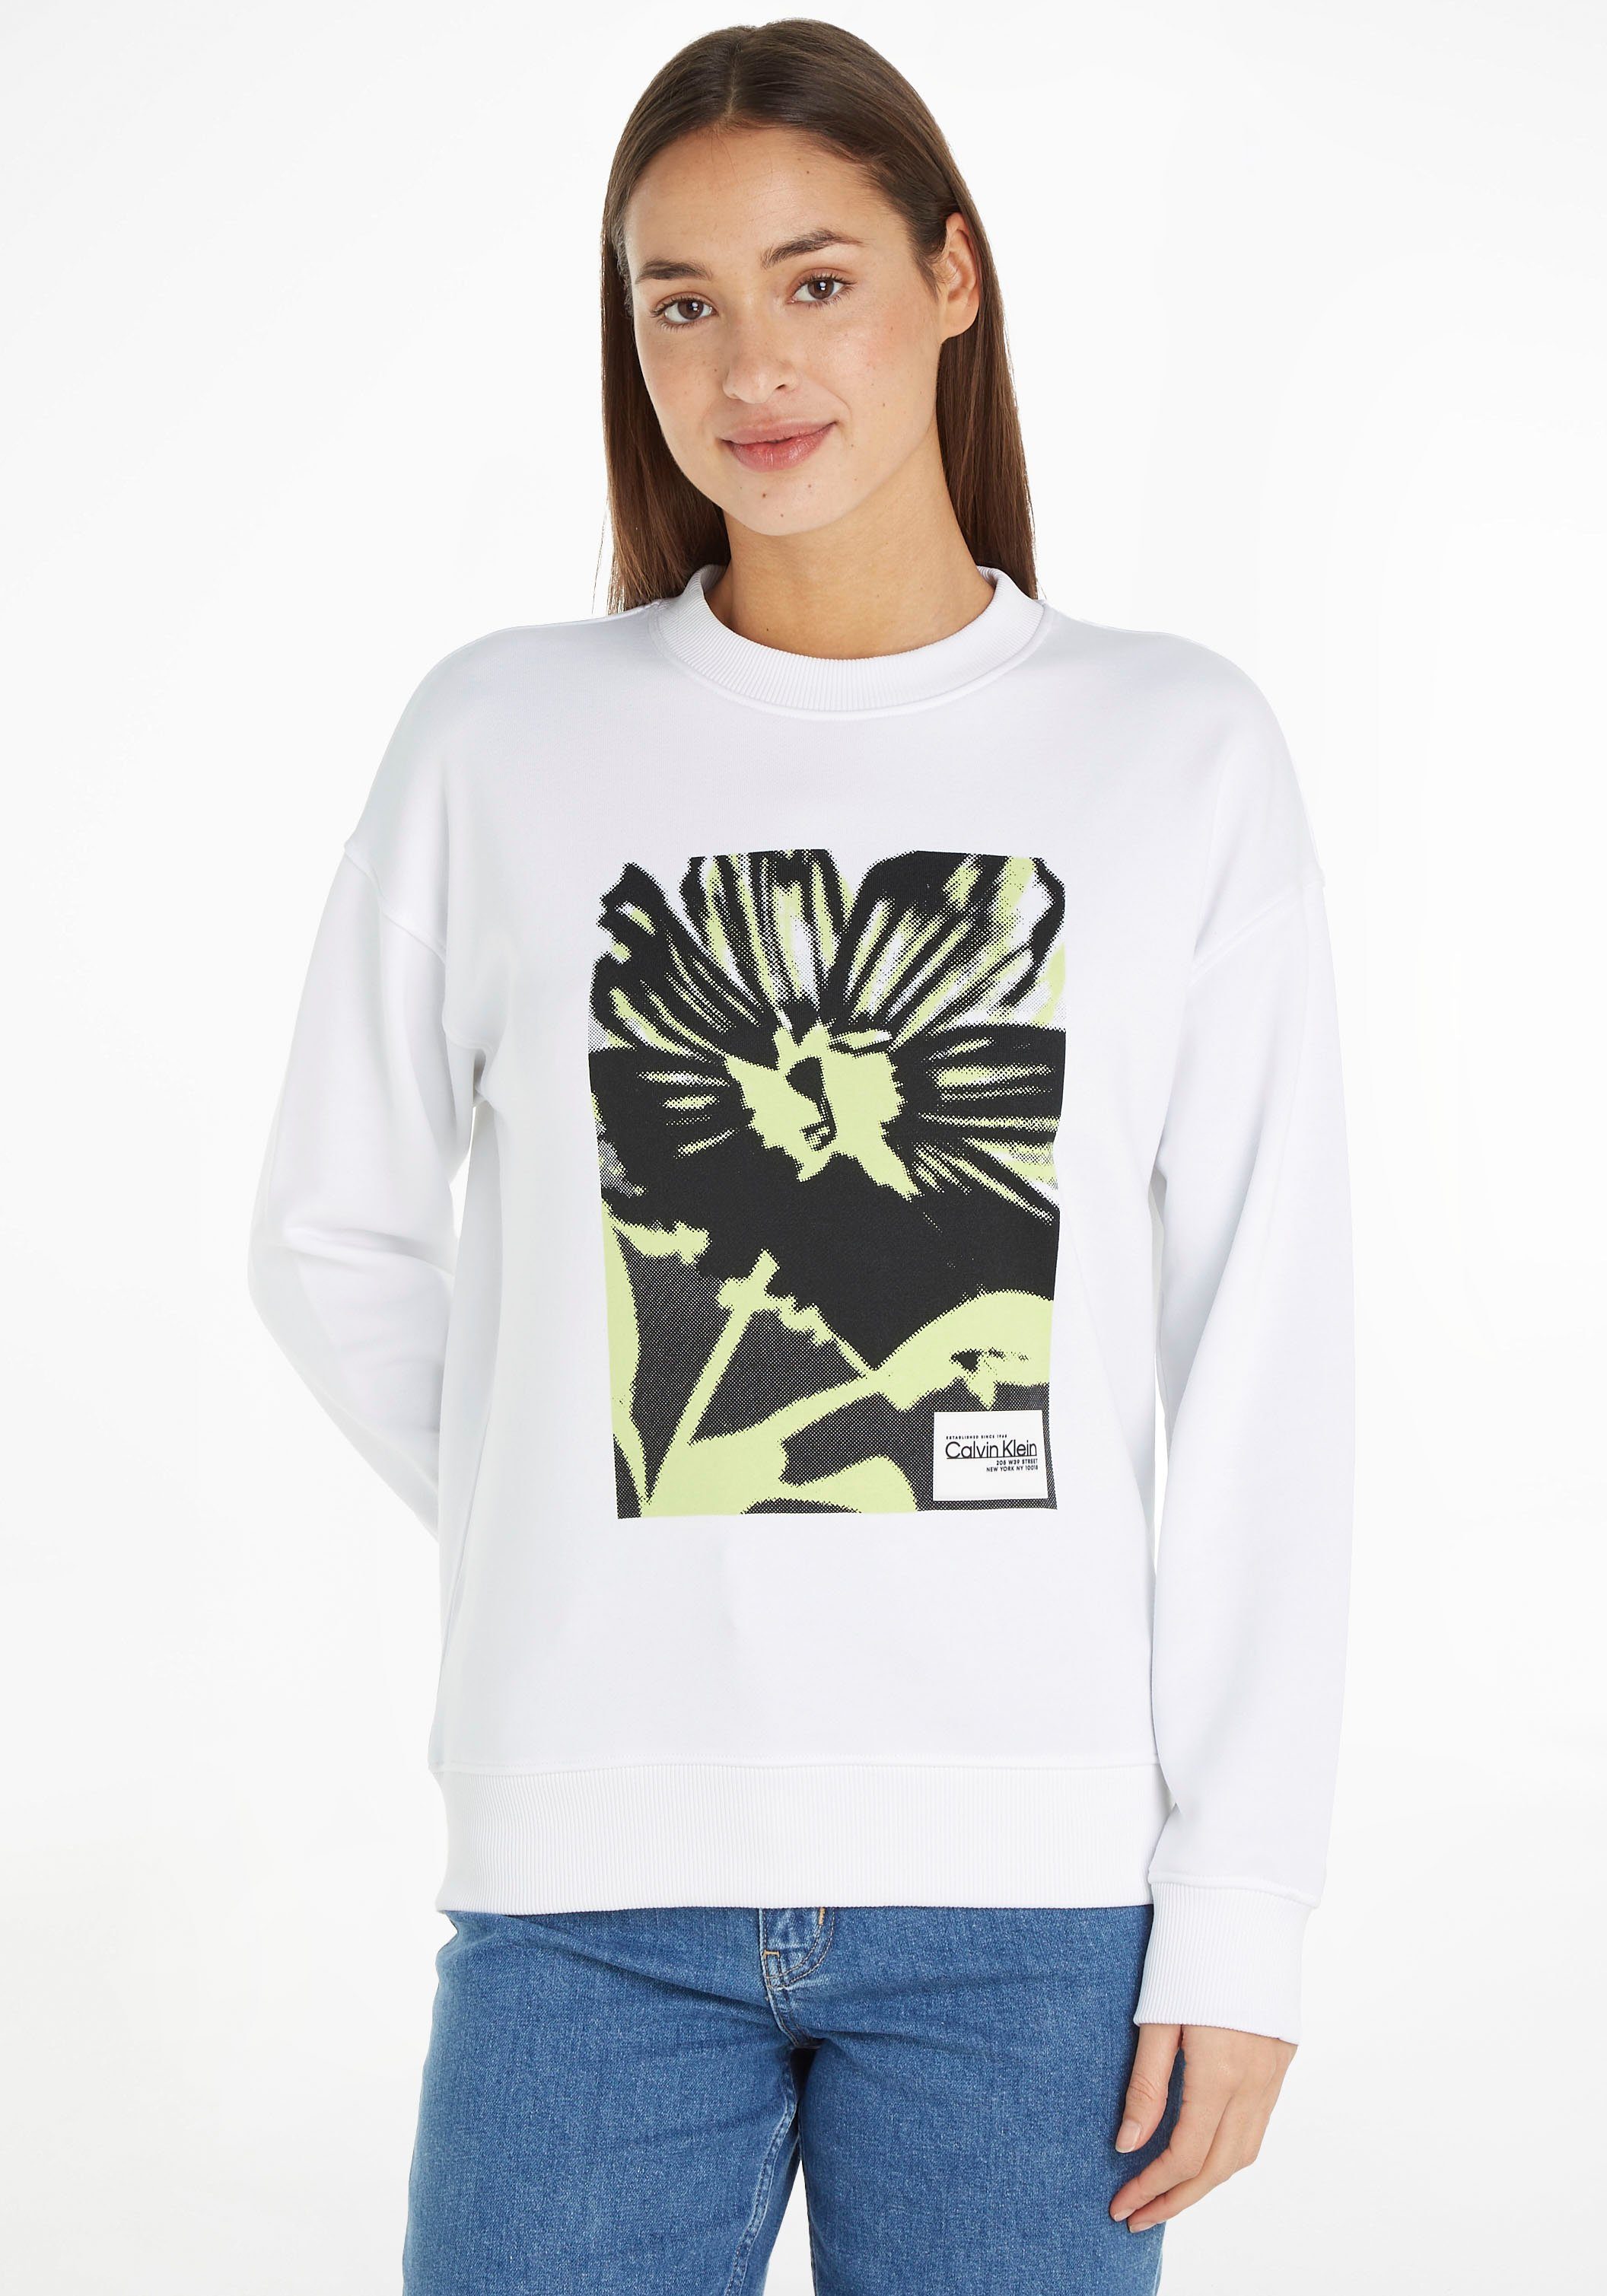 Klein von Sweatshirt Womanswear Sweatshirt Calvin mit Calvin Klein Rundhalsausschnitt,